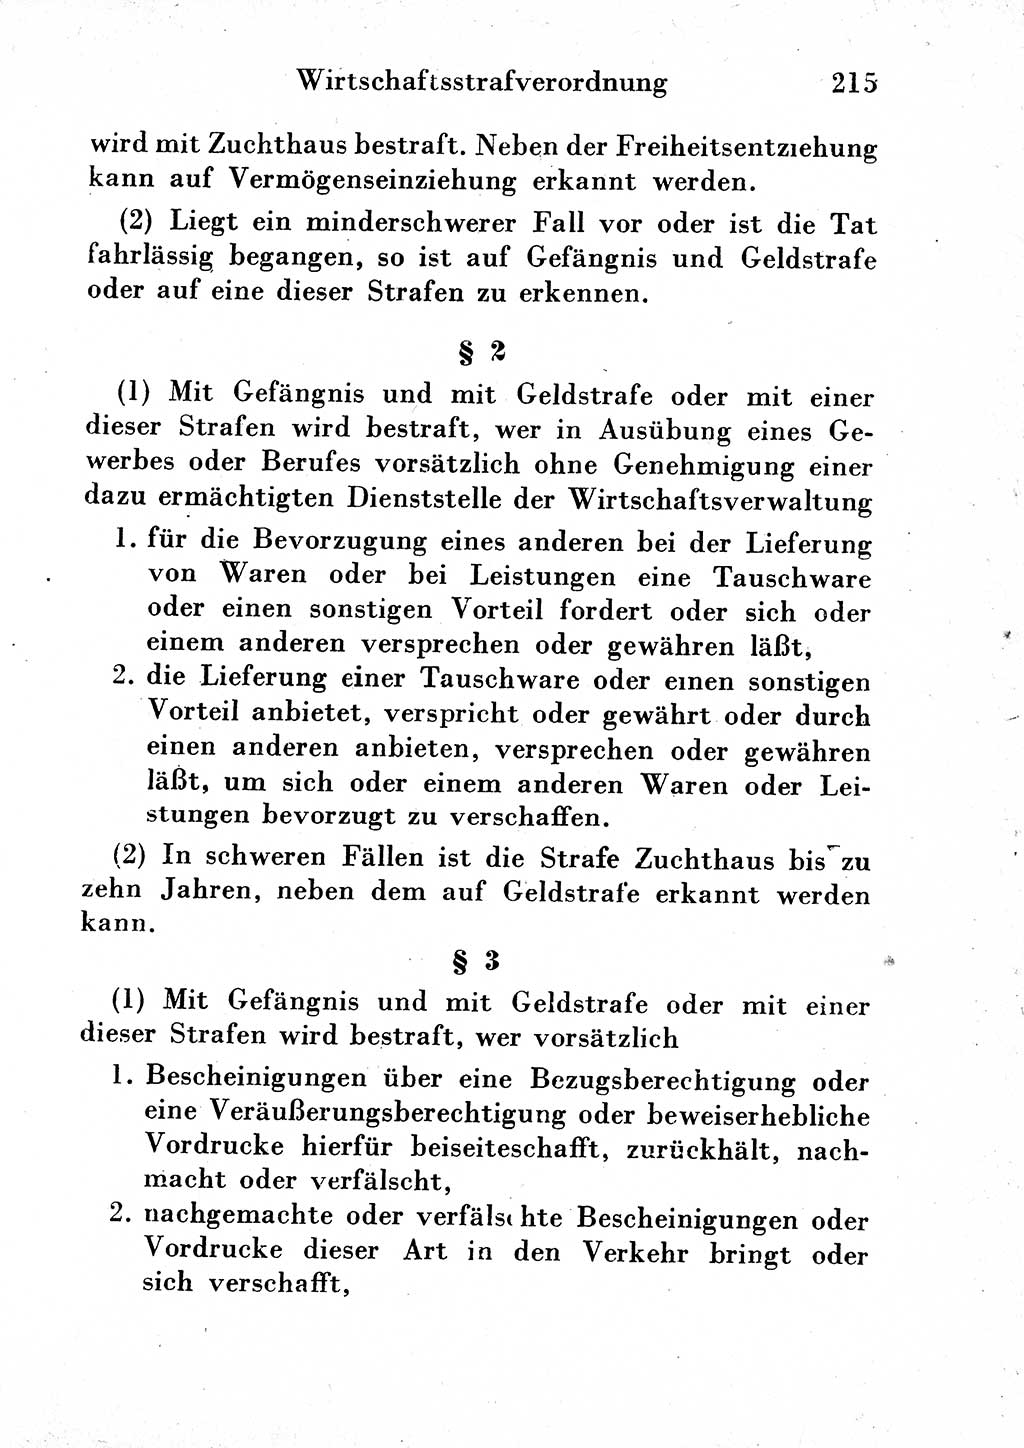 Strafgesetzbuch (StGB) und andere Strafgesetze [Deutsche Demokratische Republik (DDR)] 1954, Seite 215 (StGB Strafges. DDR 1954, S. 215)